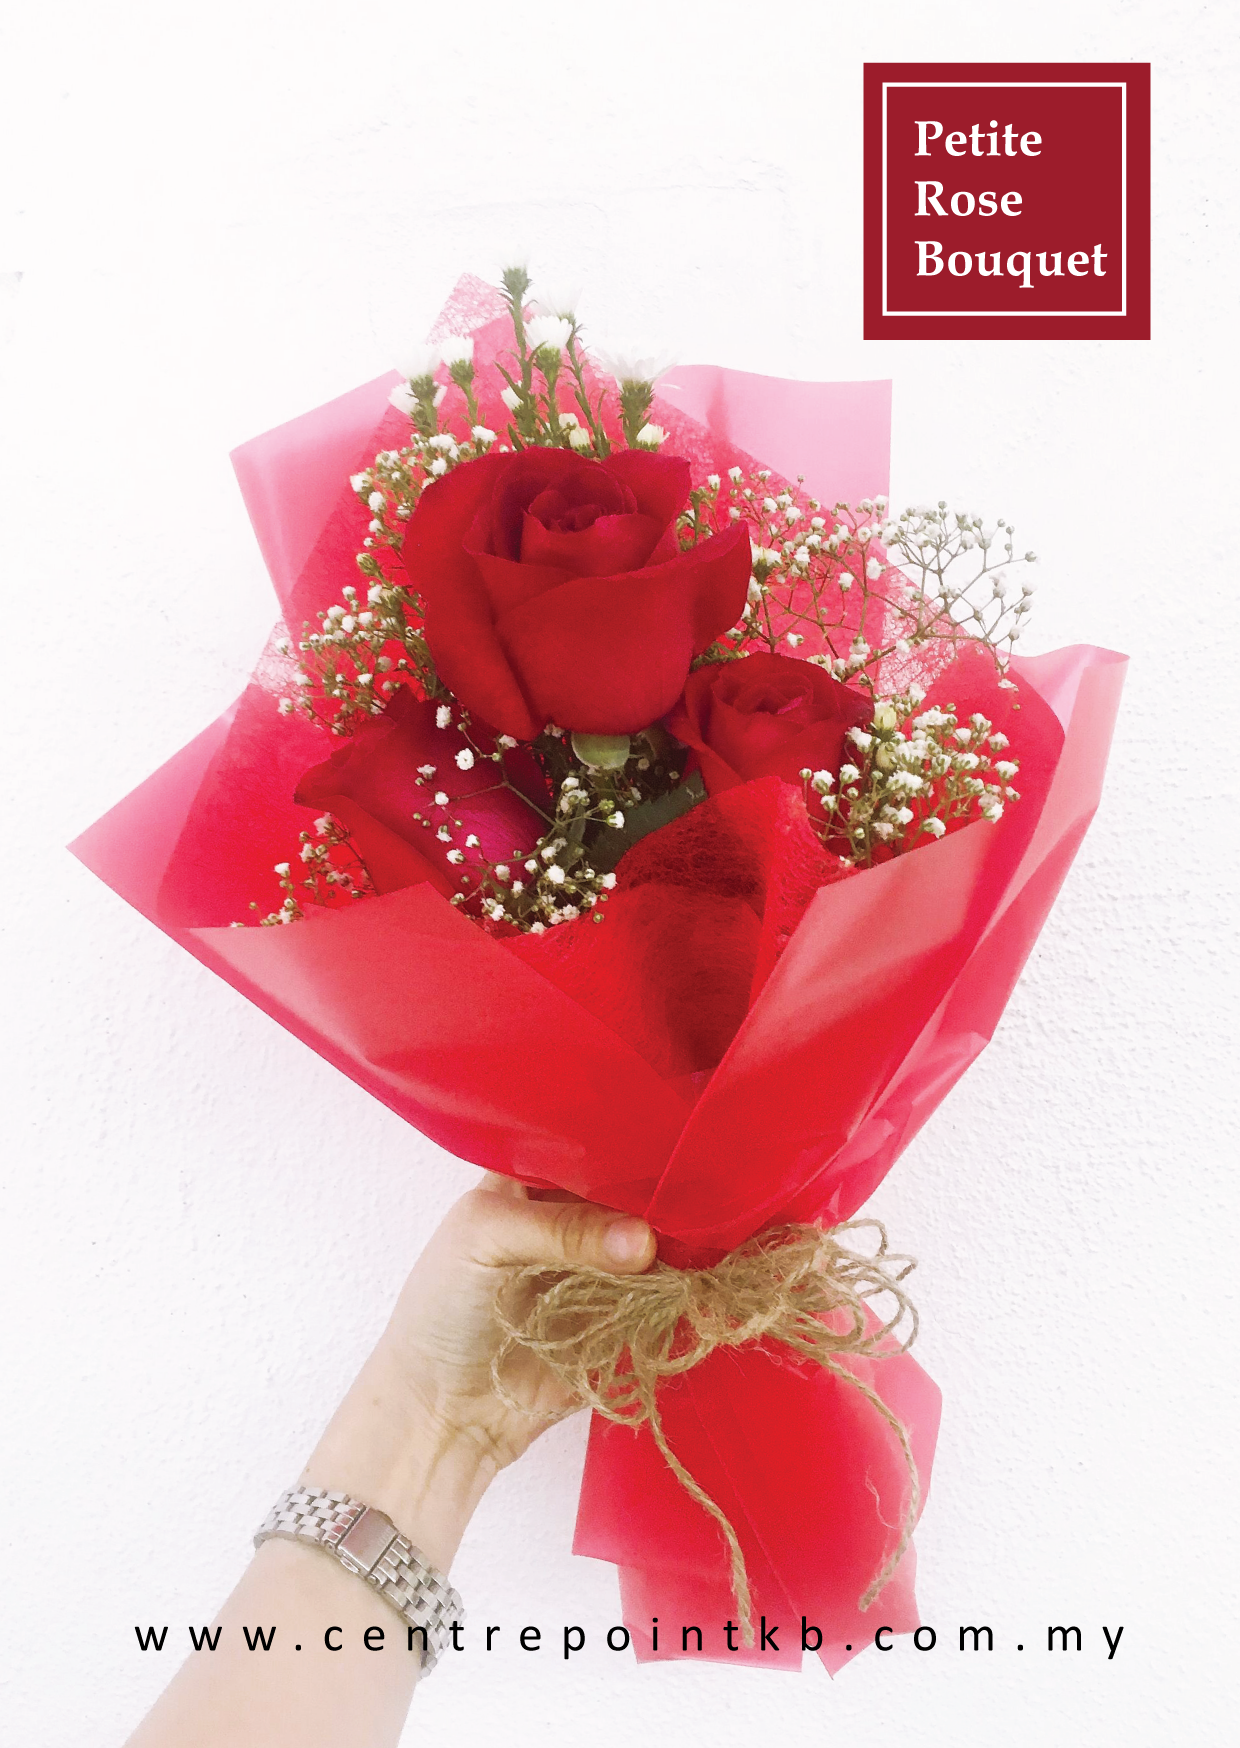 Petite Rose Bouquet 01 (RM 35.00)